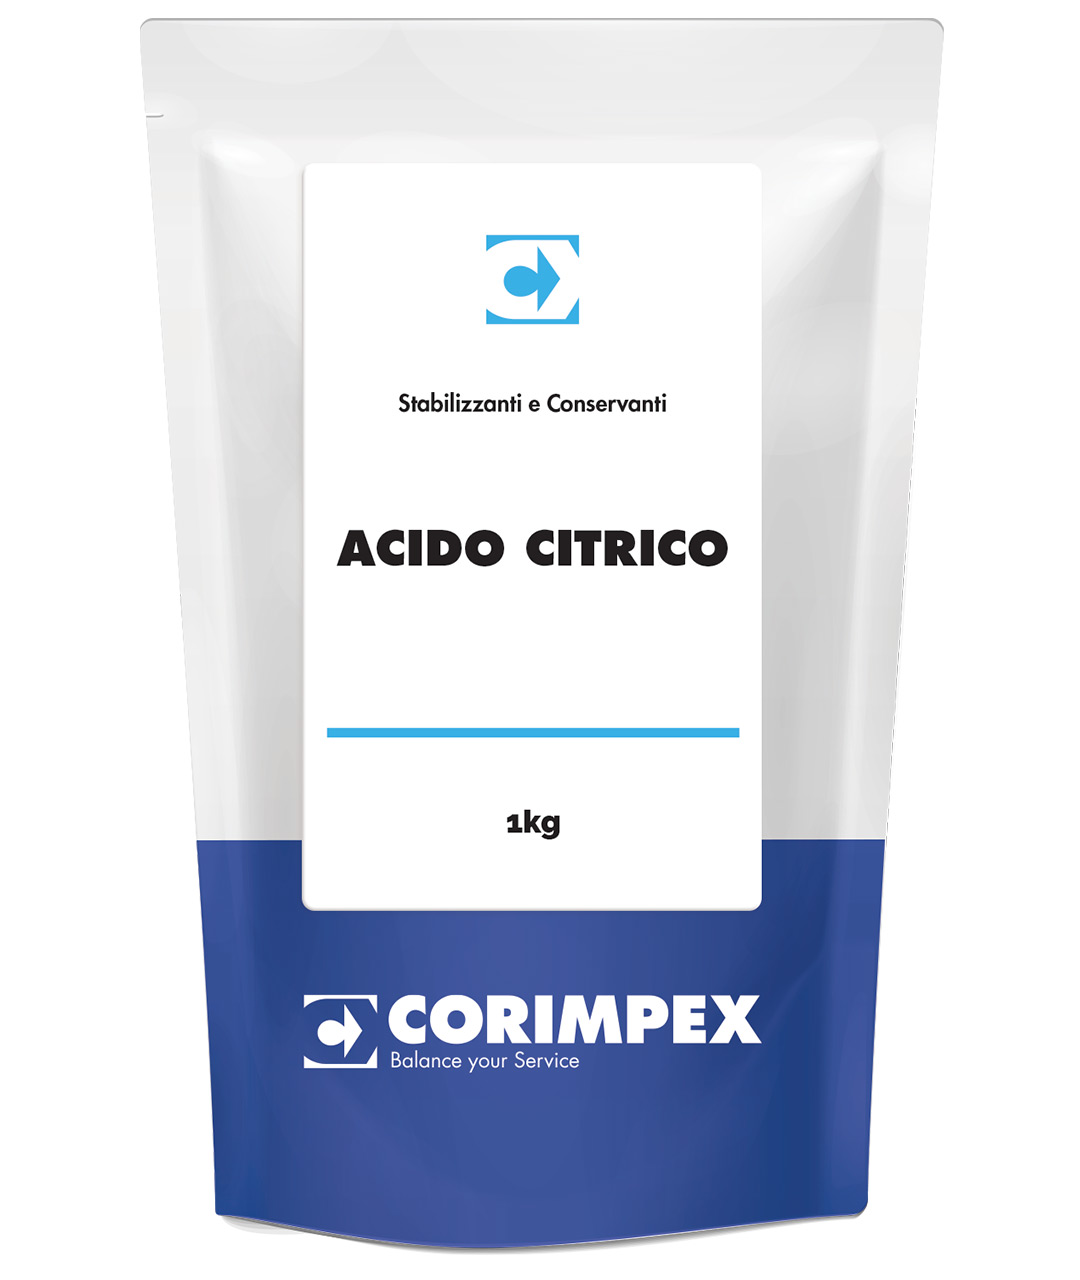 ACIDO CITRICO - CX FOR WINE